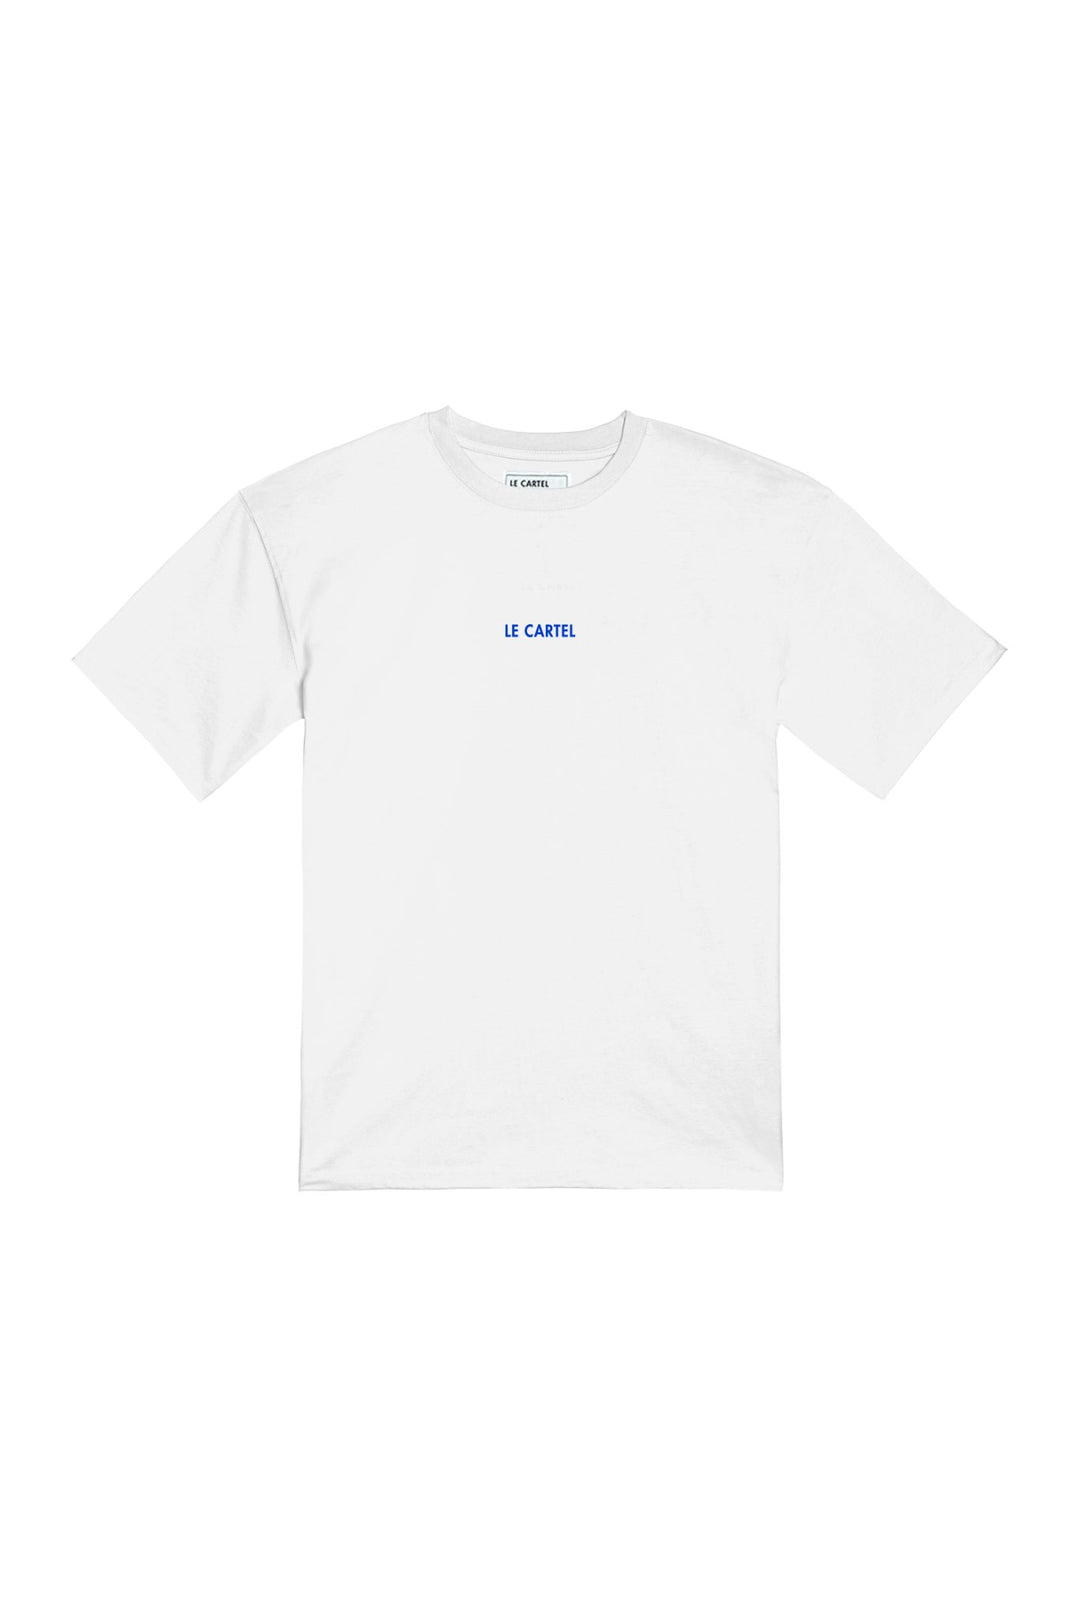 PTIT CRISS・T-shirt unisexe・Blanc - Le Cartel